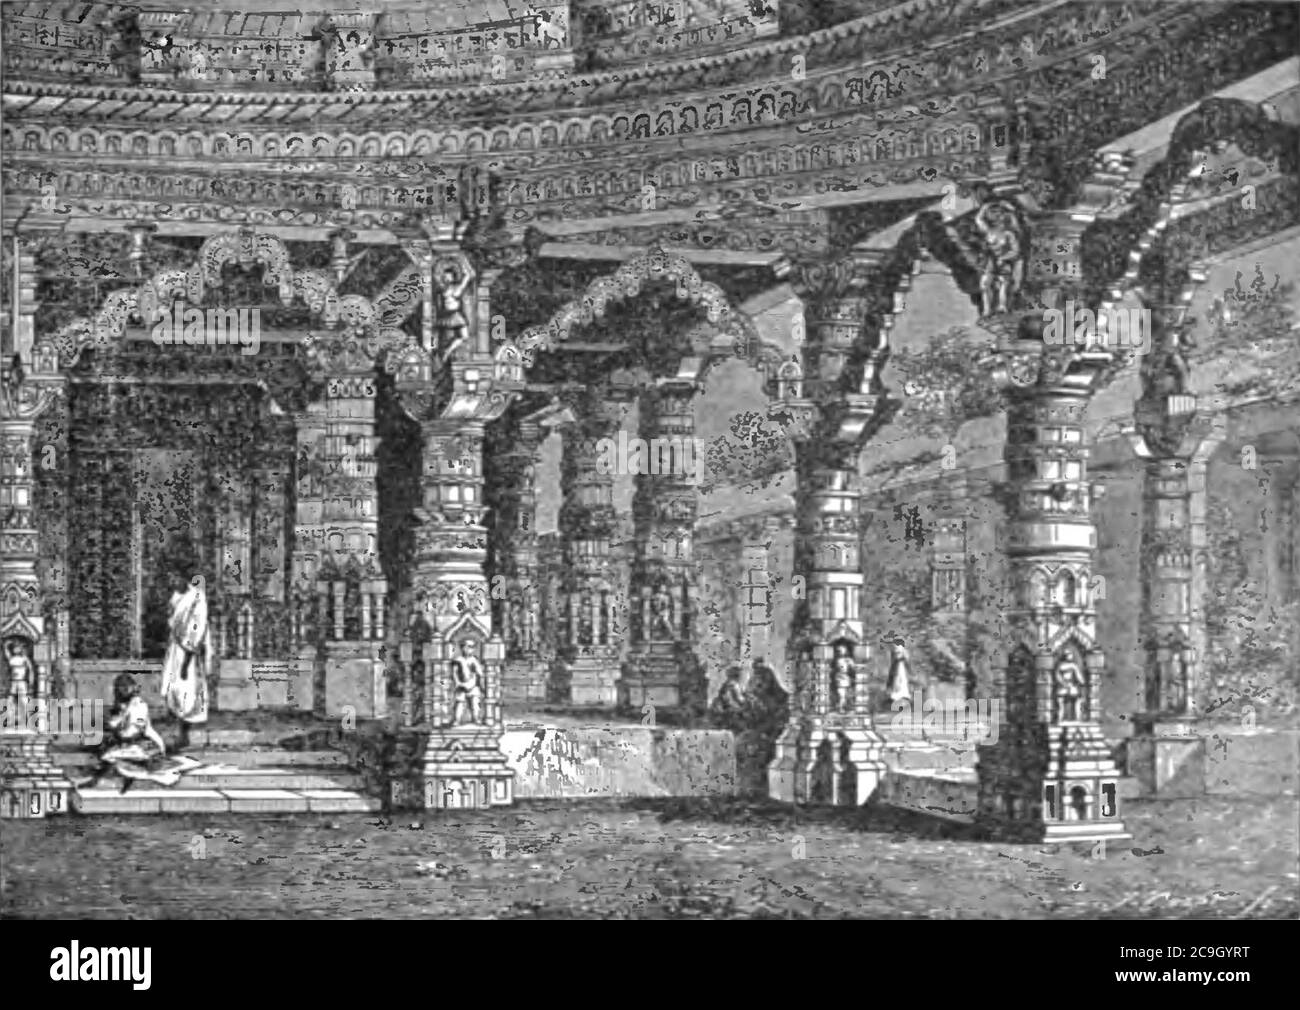 Jain Tempel von Vimala Sah, Berg Abu - Seite 325 - Geschichte Indiens Band 1 (1906). Stockfoto